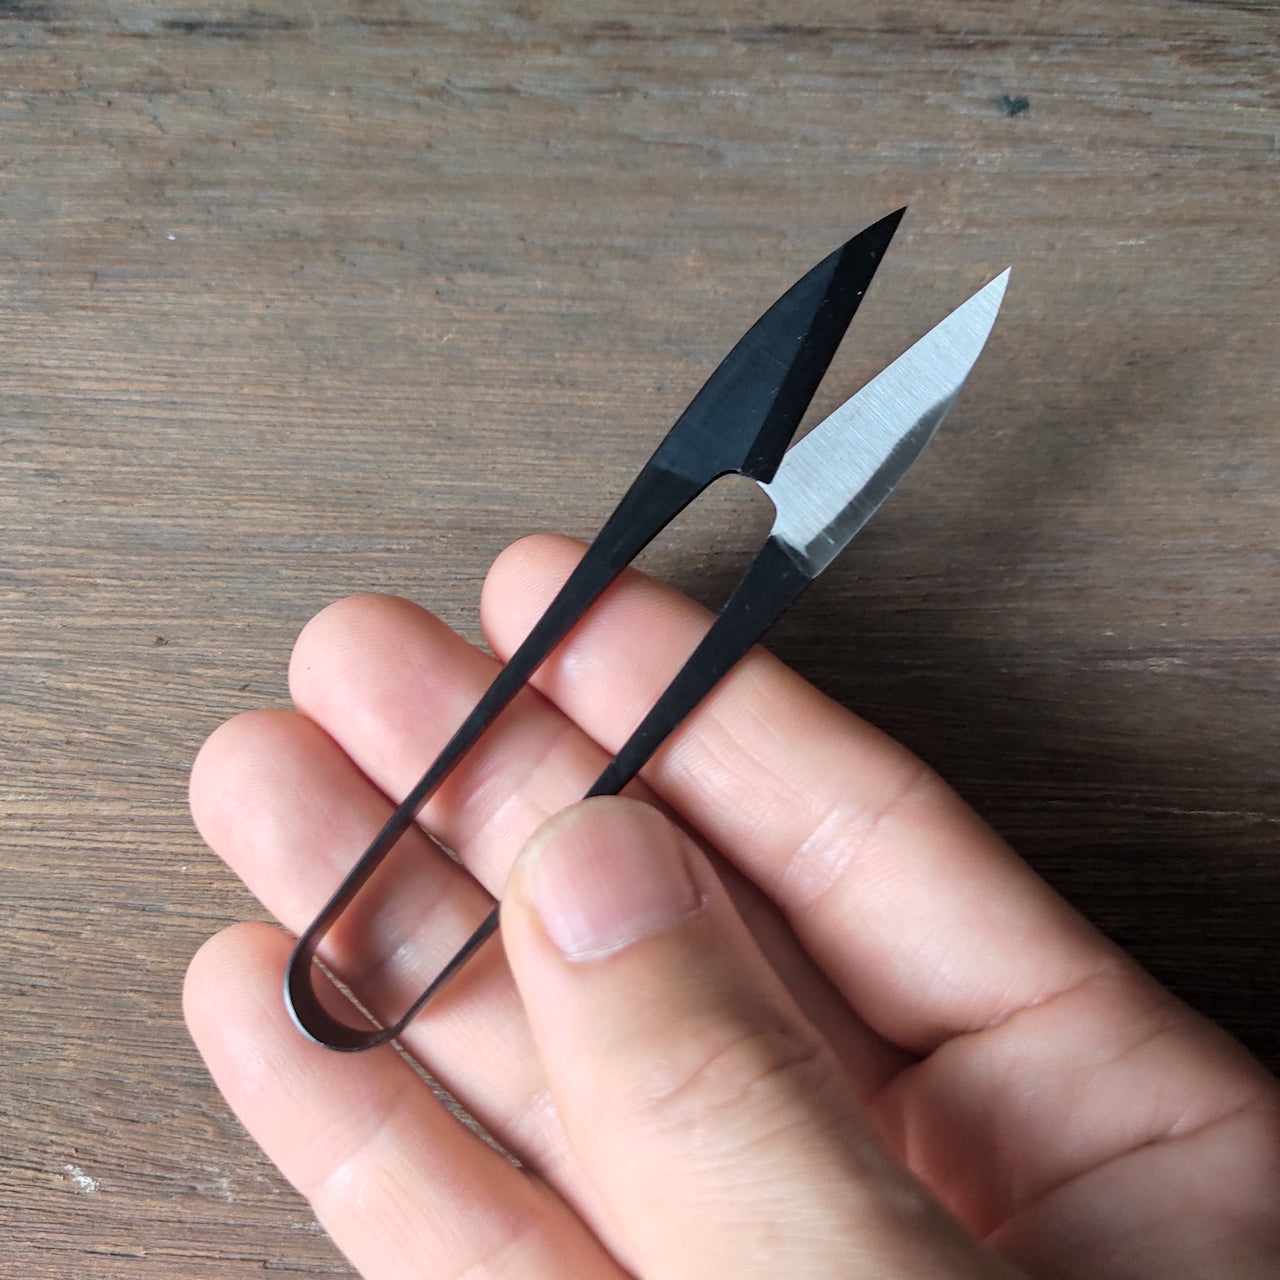 Thread scissors - Black